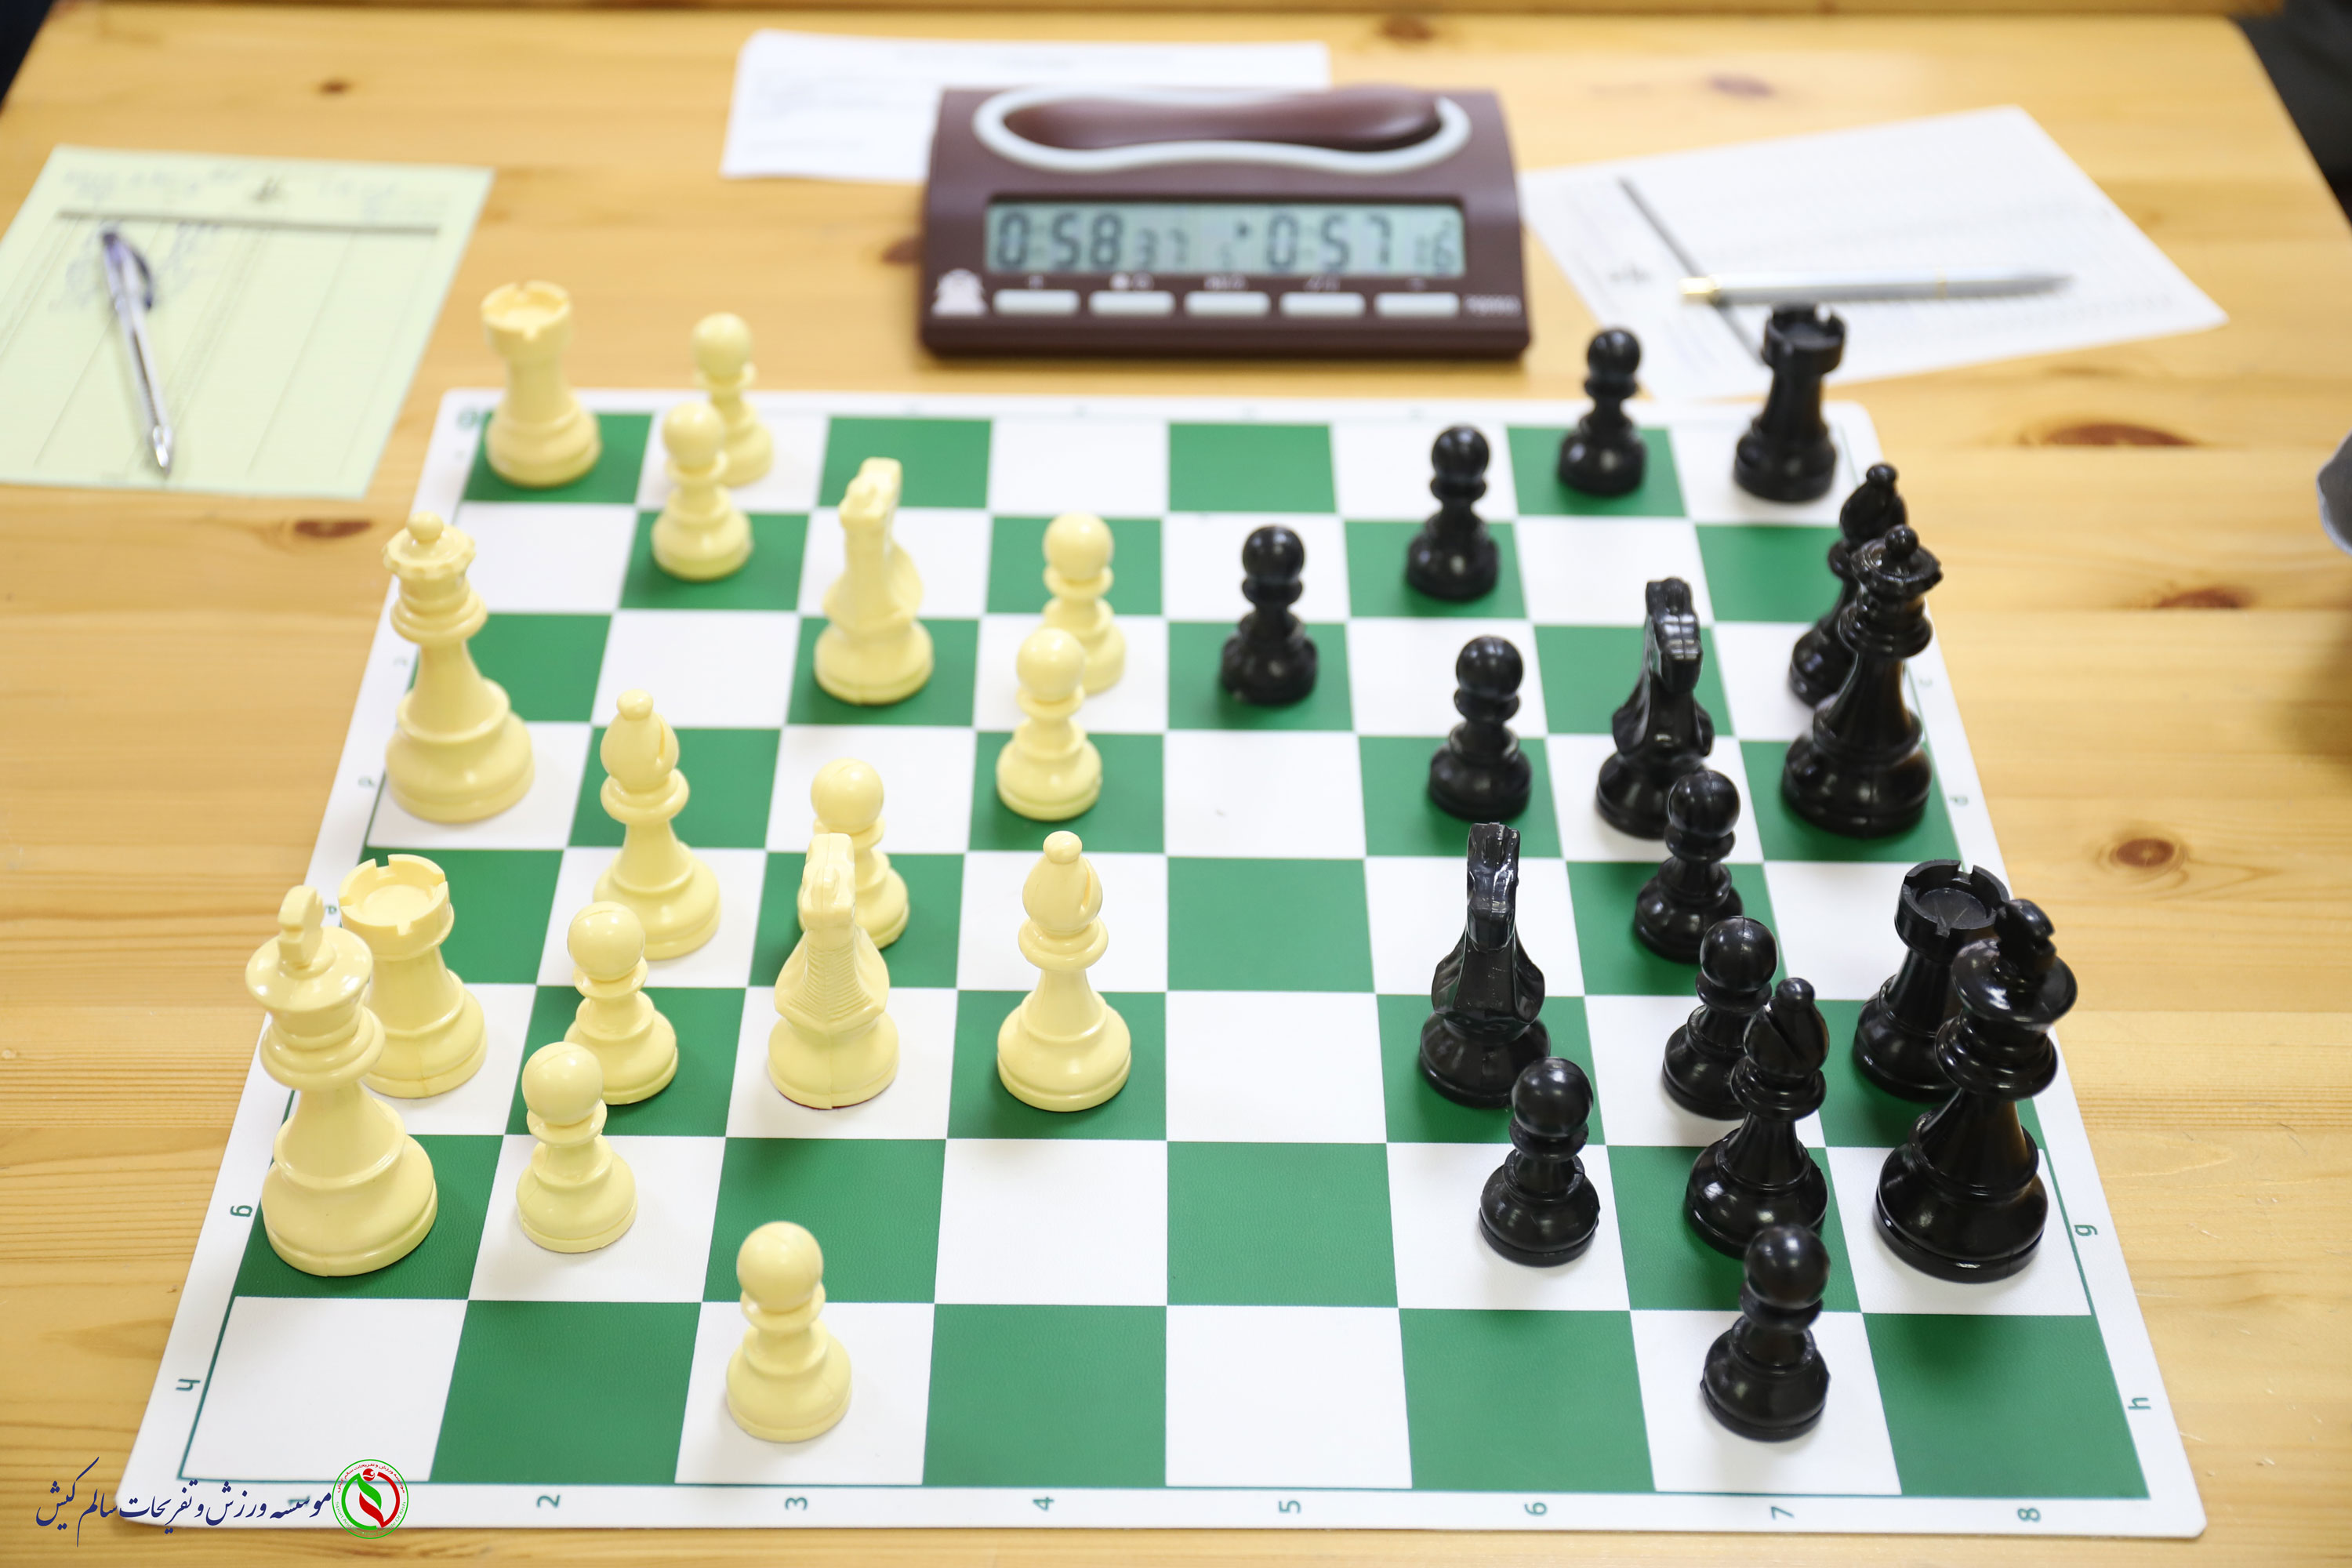 دو خبر از شطرنج جزیره کیش؛ششمین دوره مسابقات استاندارد برگزار می شود/ داوران درجه 3 در کلاس آموزشی